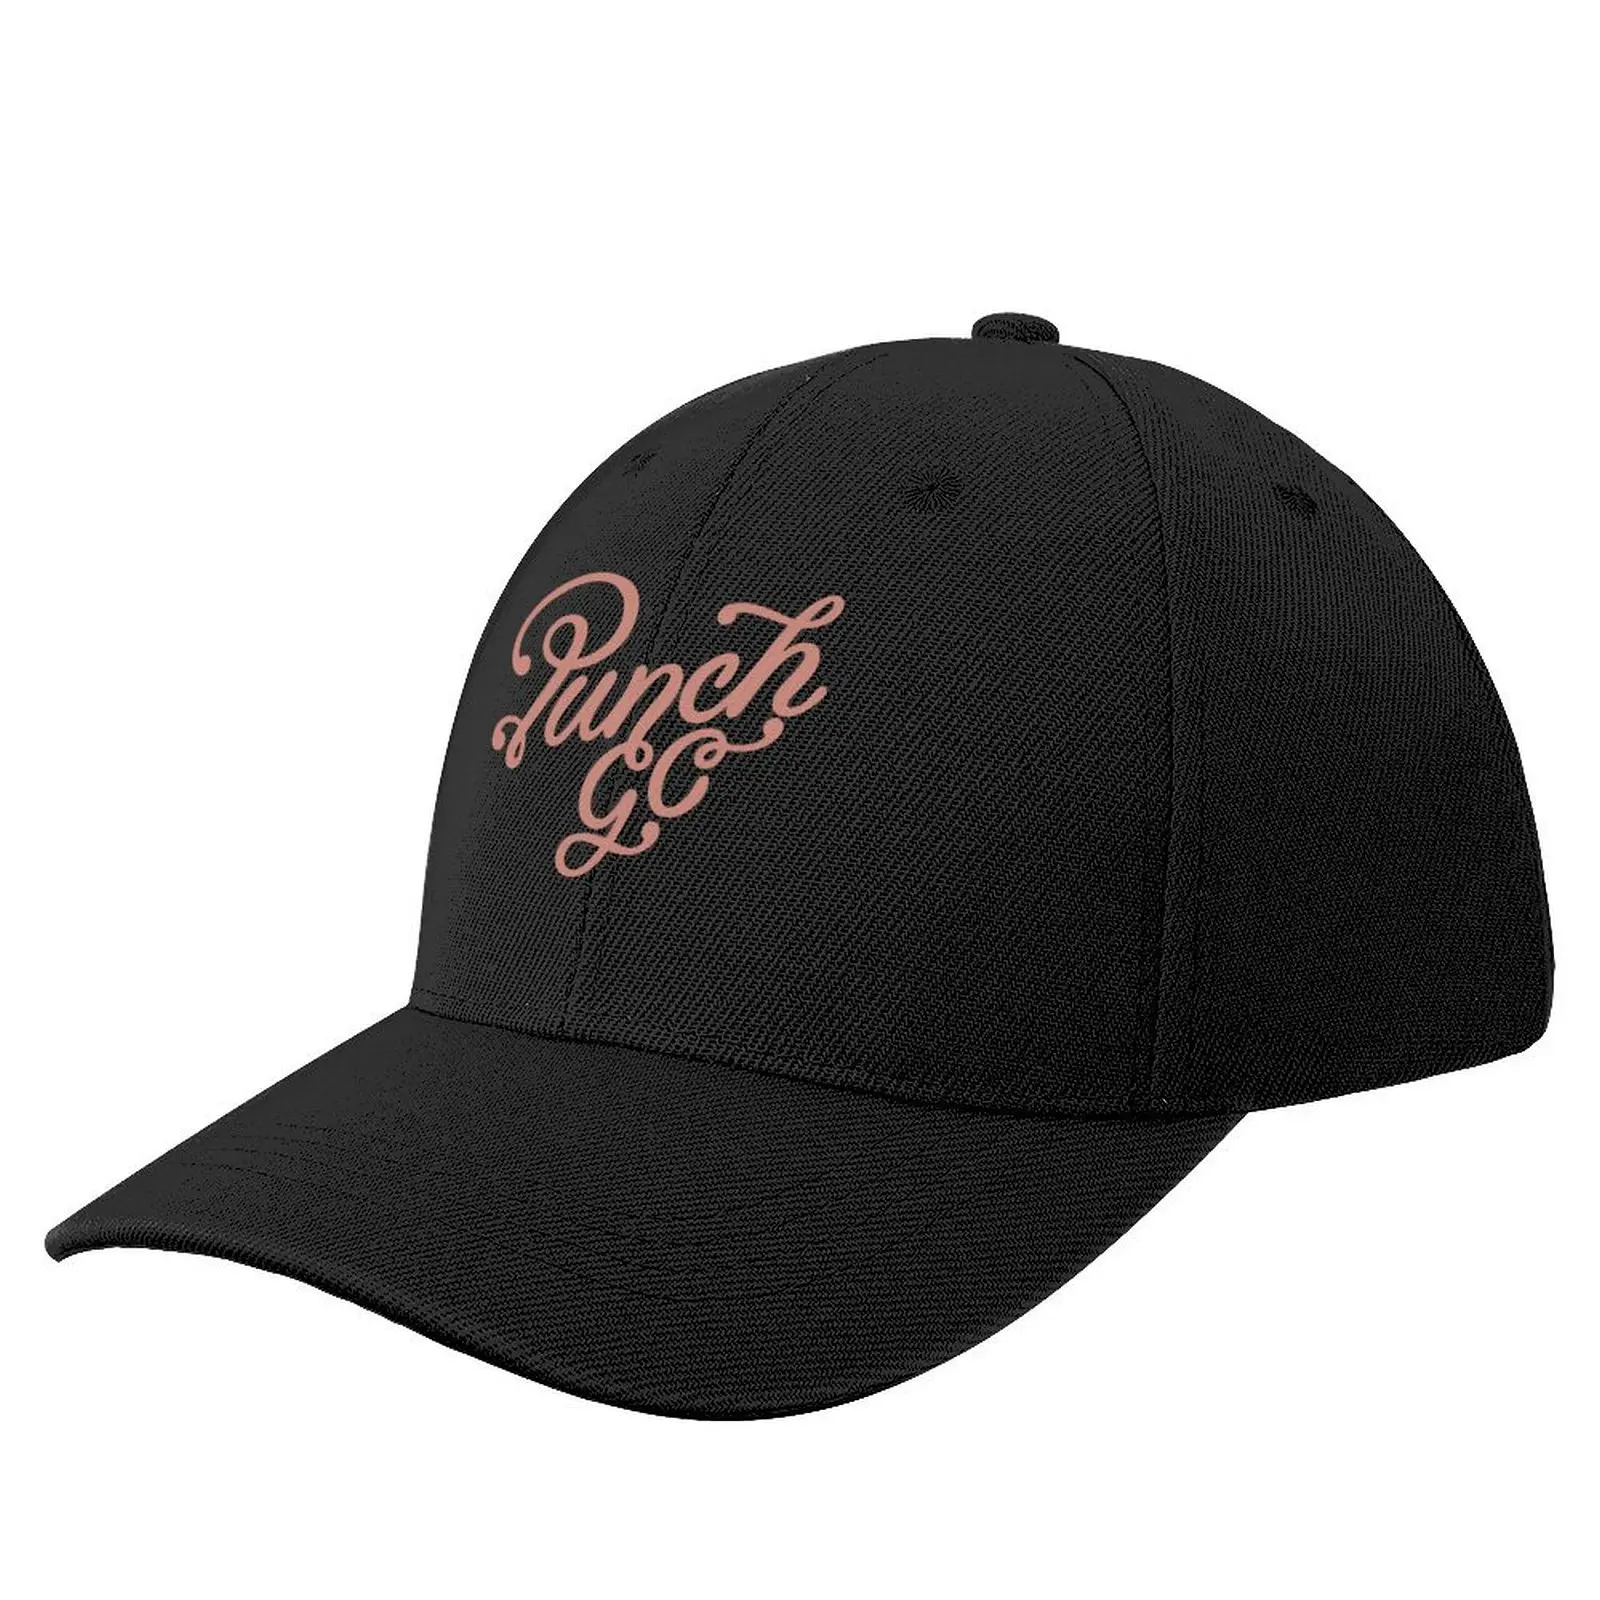 

[ Tournament ] team team legend golf ki pak #11 Baseball Cap Golf Wear Golf Hat Beach Bag Hat Man For The Sun Men Women's